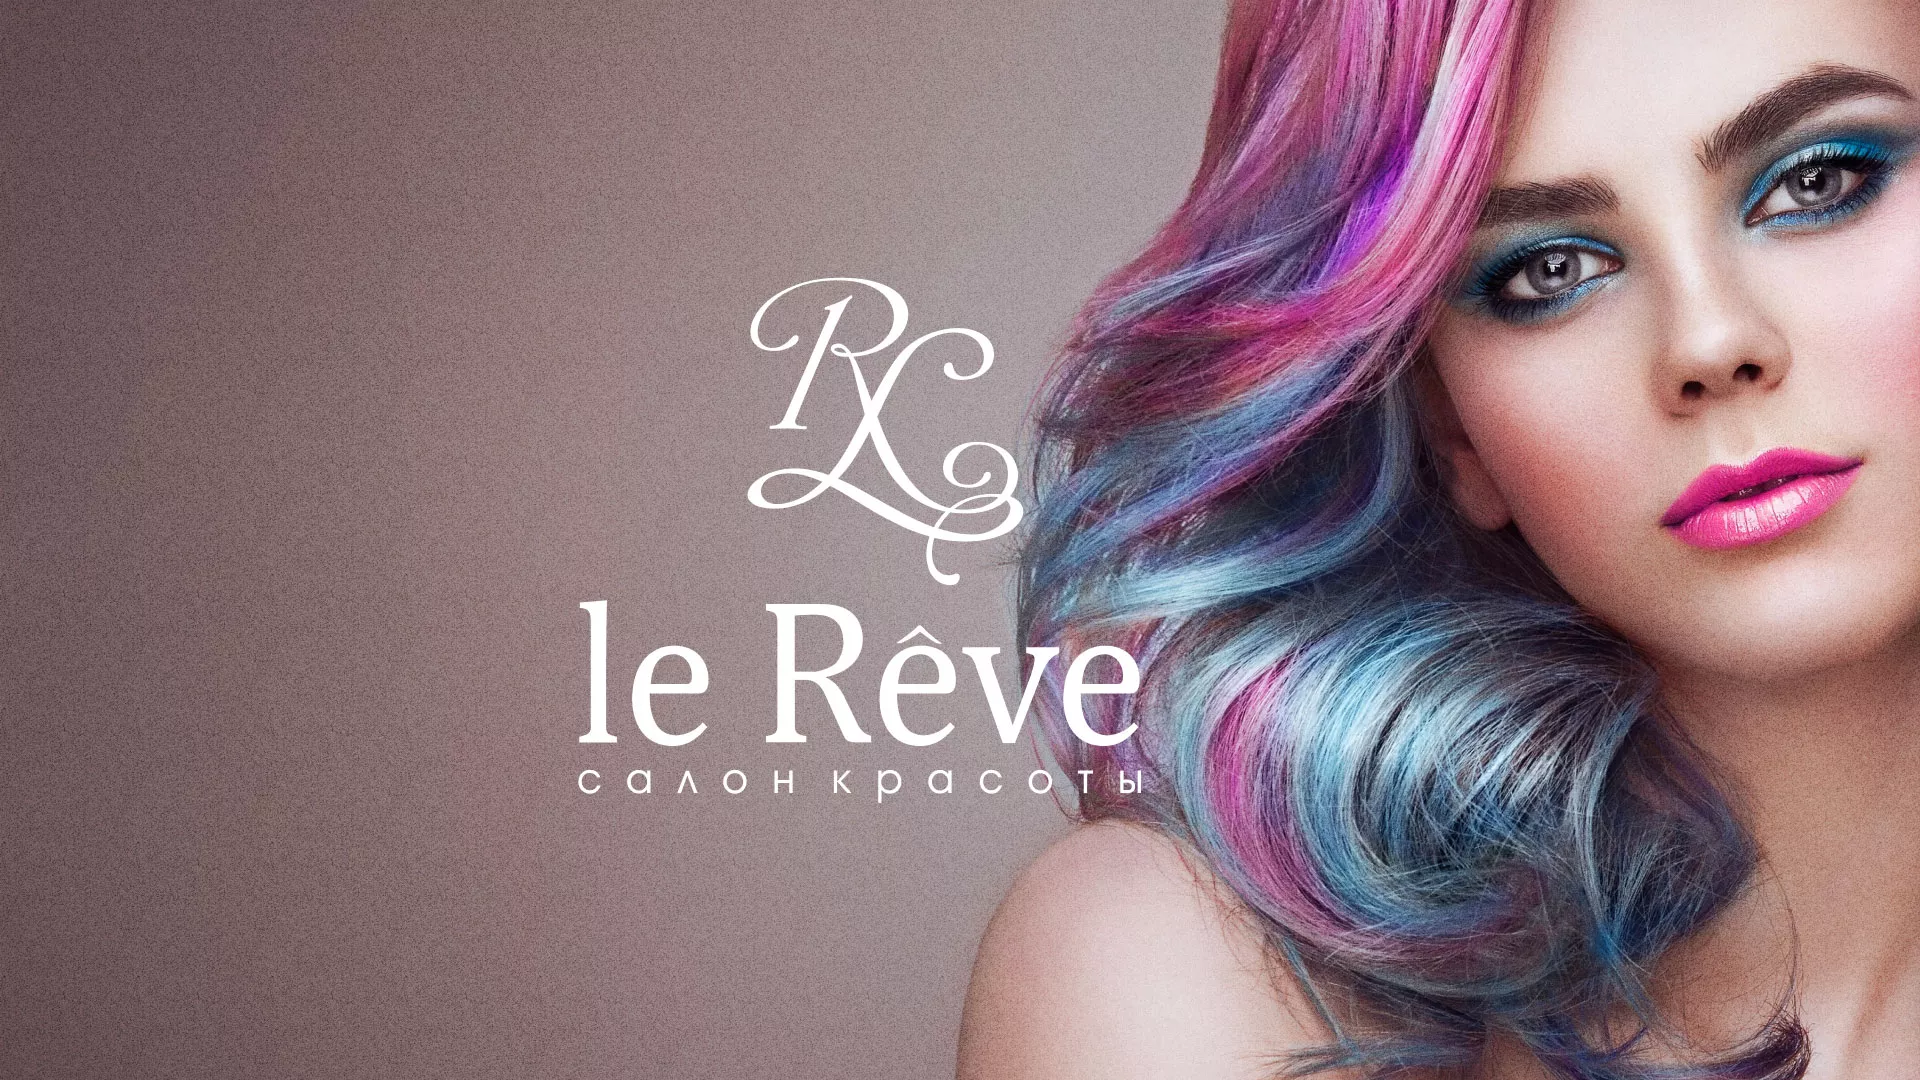 Создание сайта для салона красоты «Le Reve» в Шуе